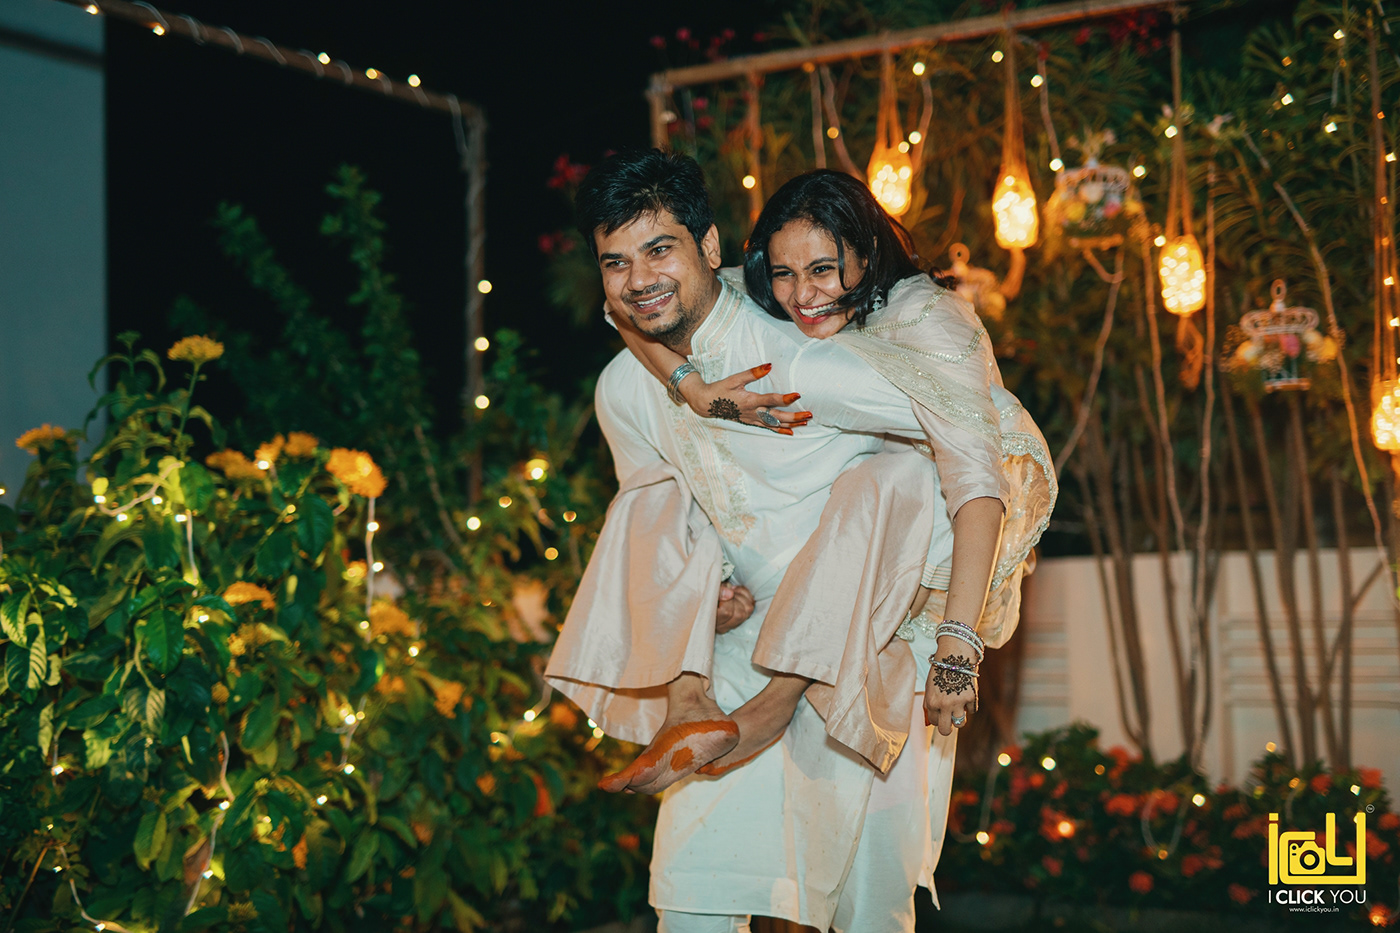 Candid Photography cinematic cinematography couple indian wedding wedding Wedding Photography weddingideas Weddings